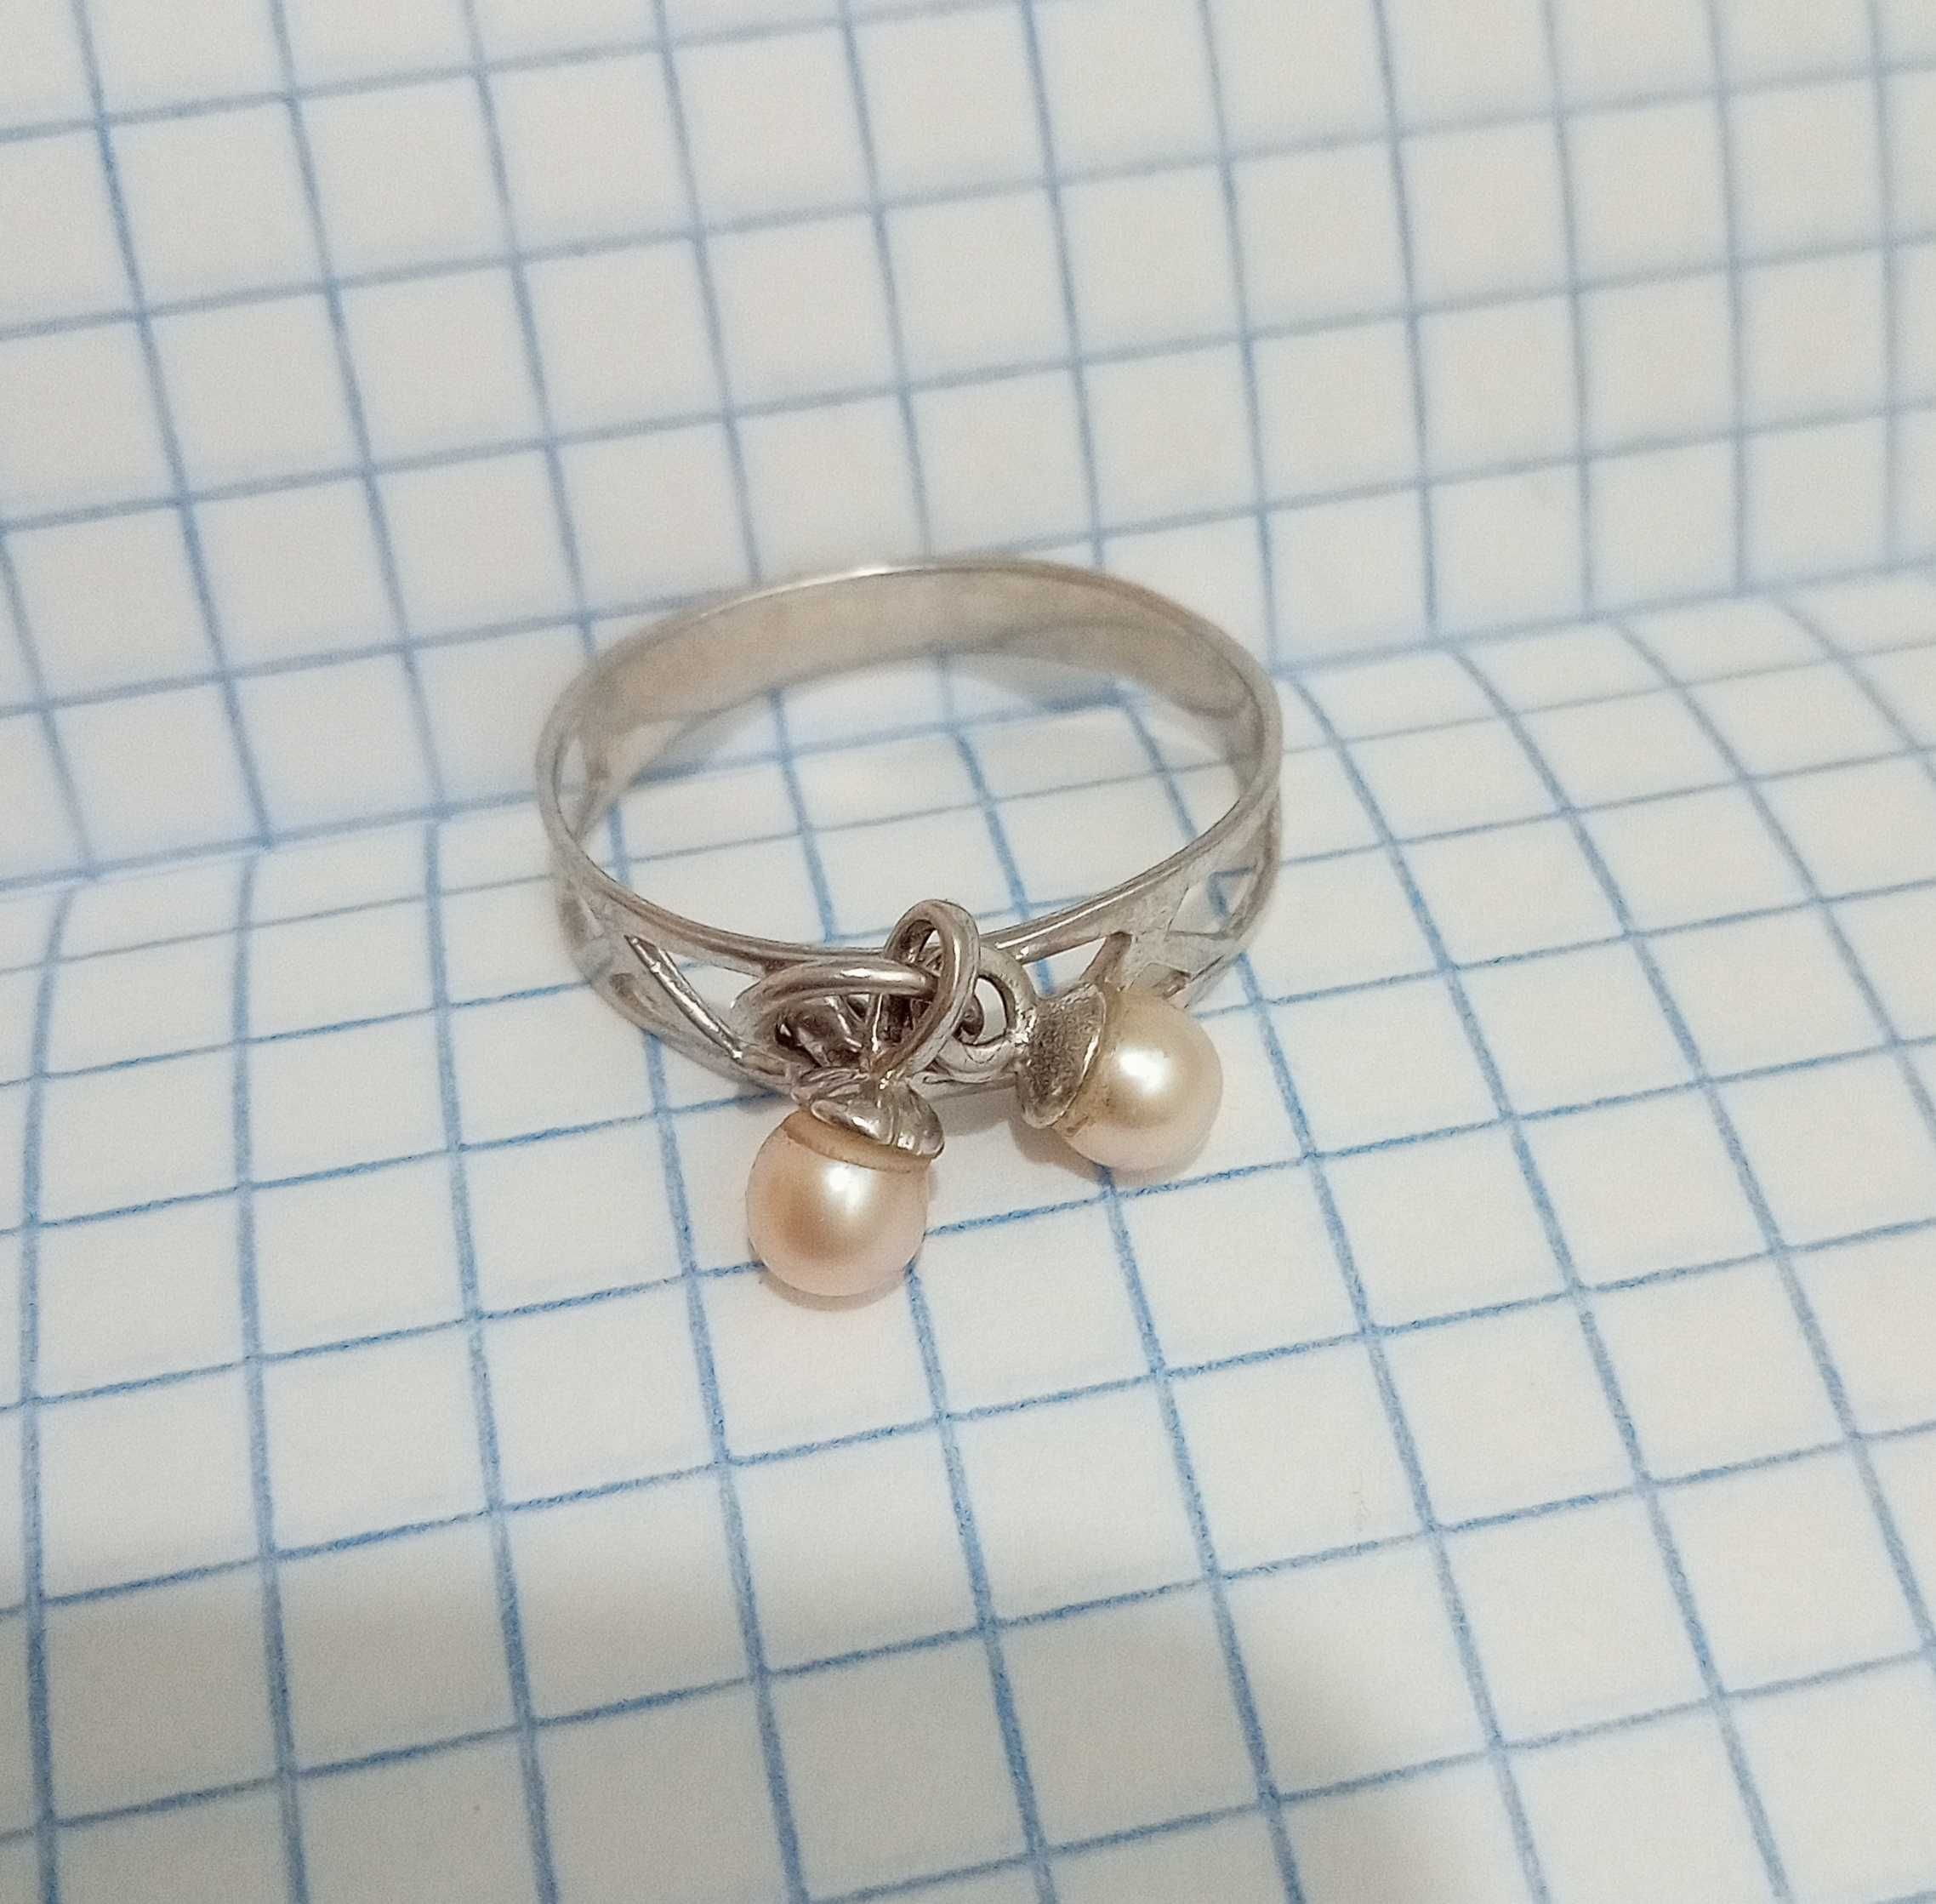 Кольцо колечко перстень  серебро 925 проба. Жемчуг. Размер 18